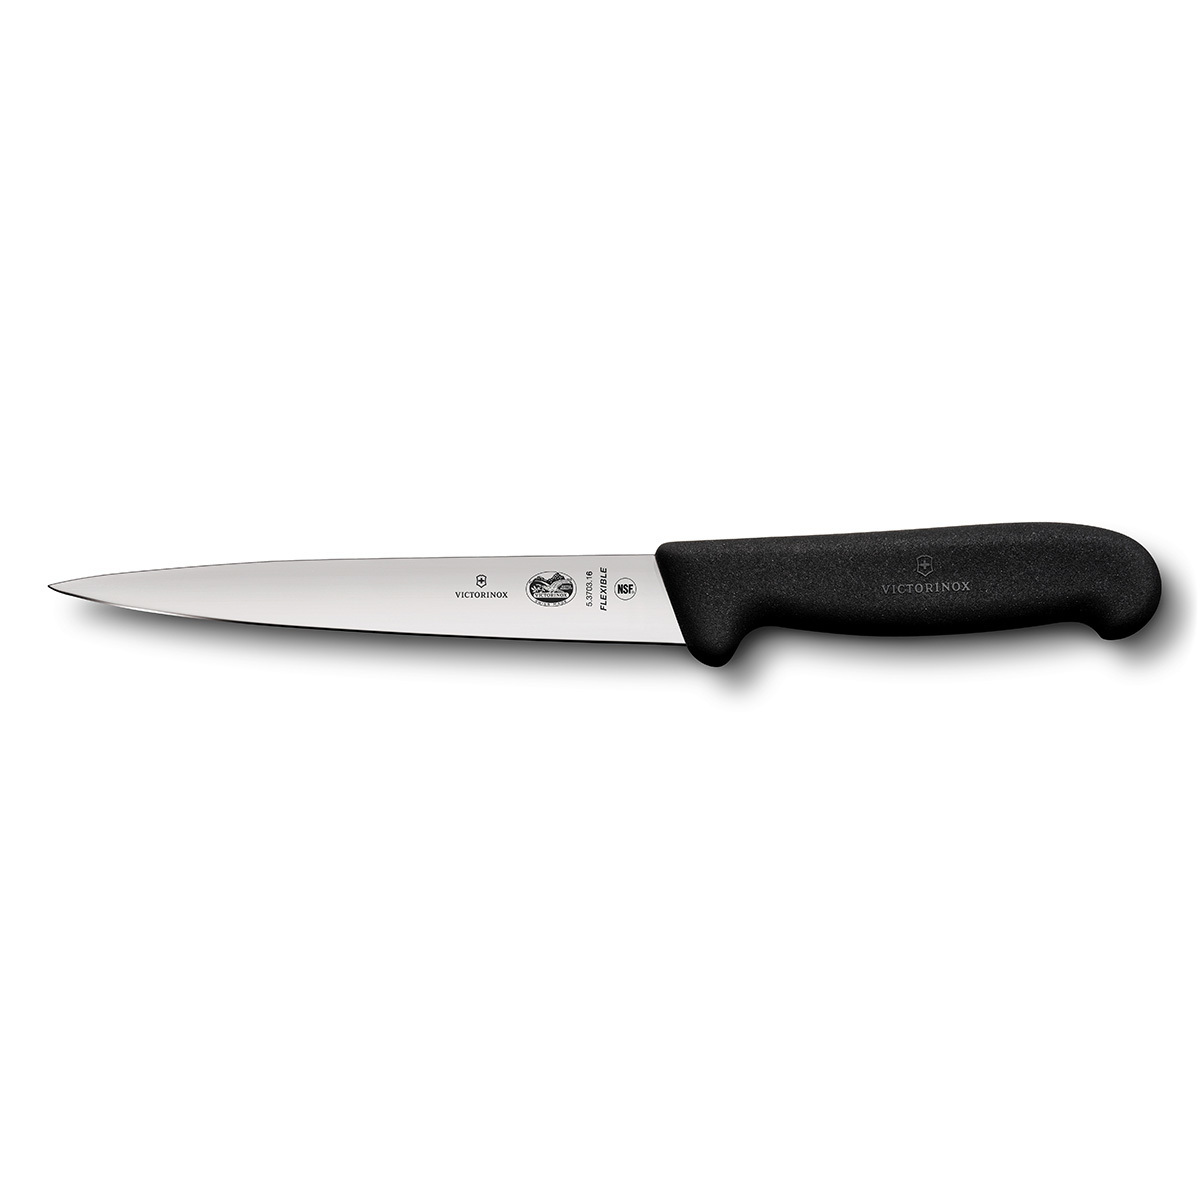 Нож филейный Fibrox 18 см Victorinox, нержавеющая сталь, рукоять термопластический эластомер от Ножиков